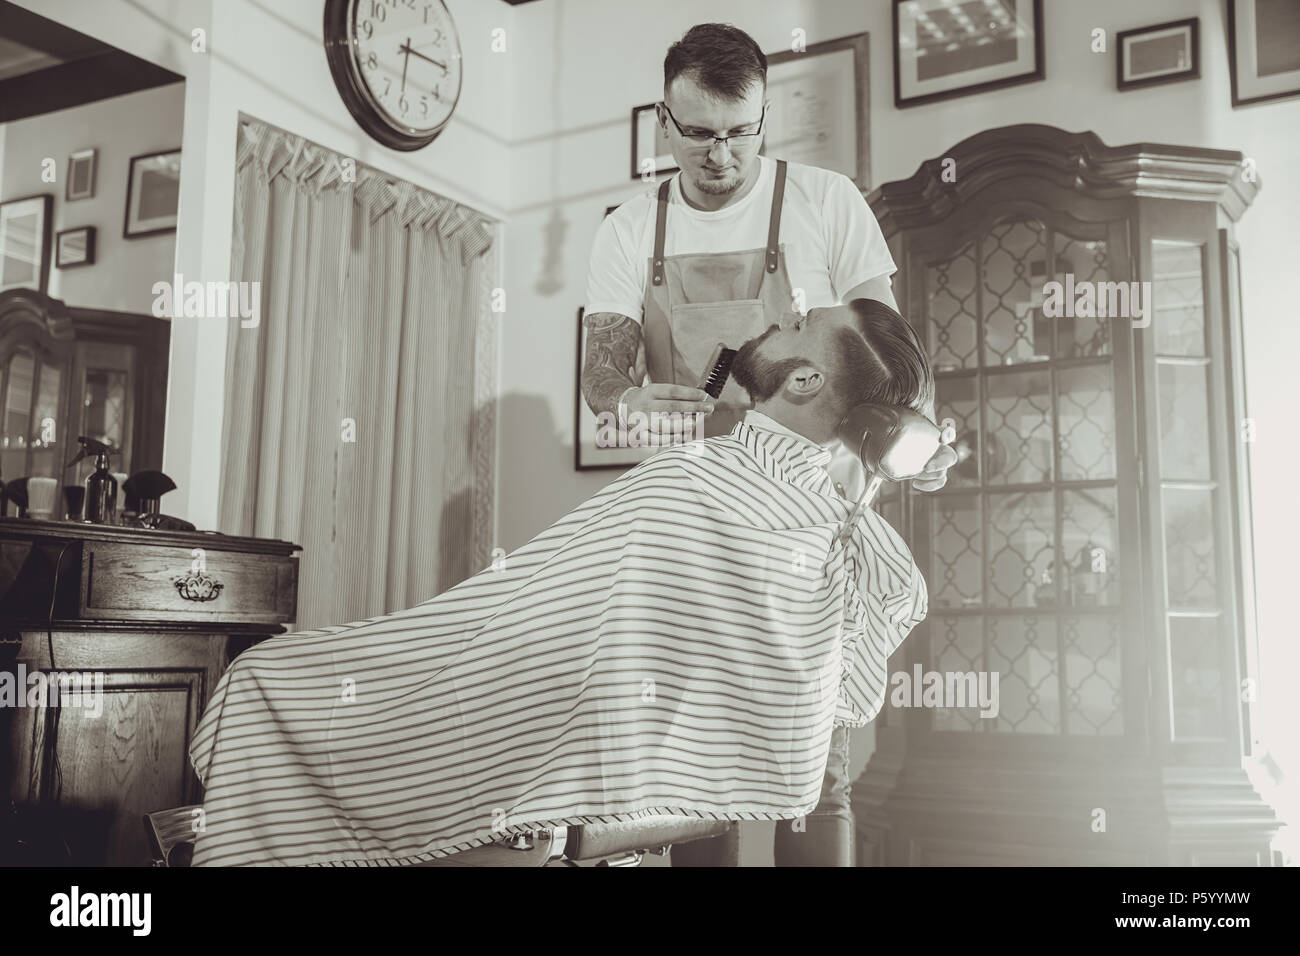 Friseur während der Arbeit in seinem Friseur. Bild in Schwarz und Weiß Stilisierung Stockfoto